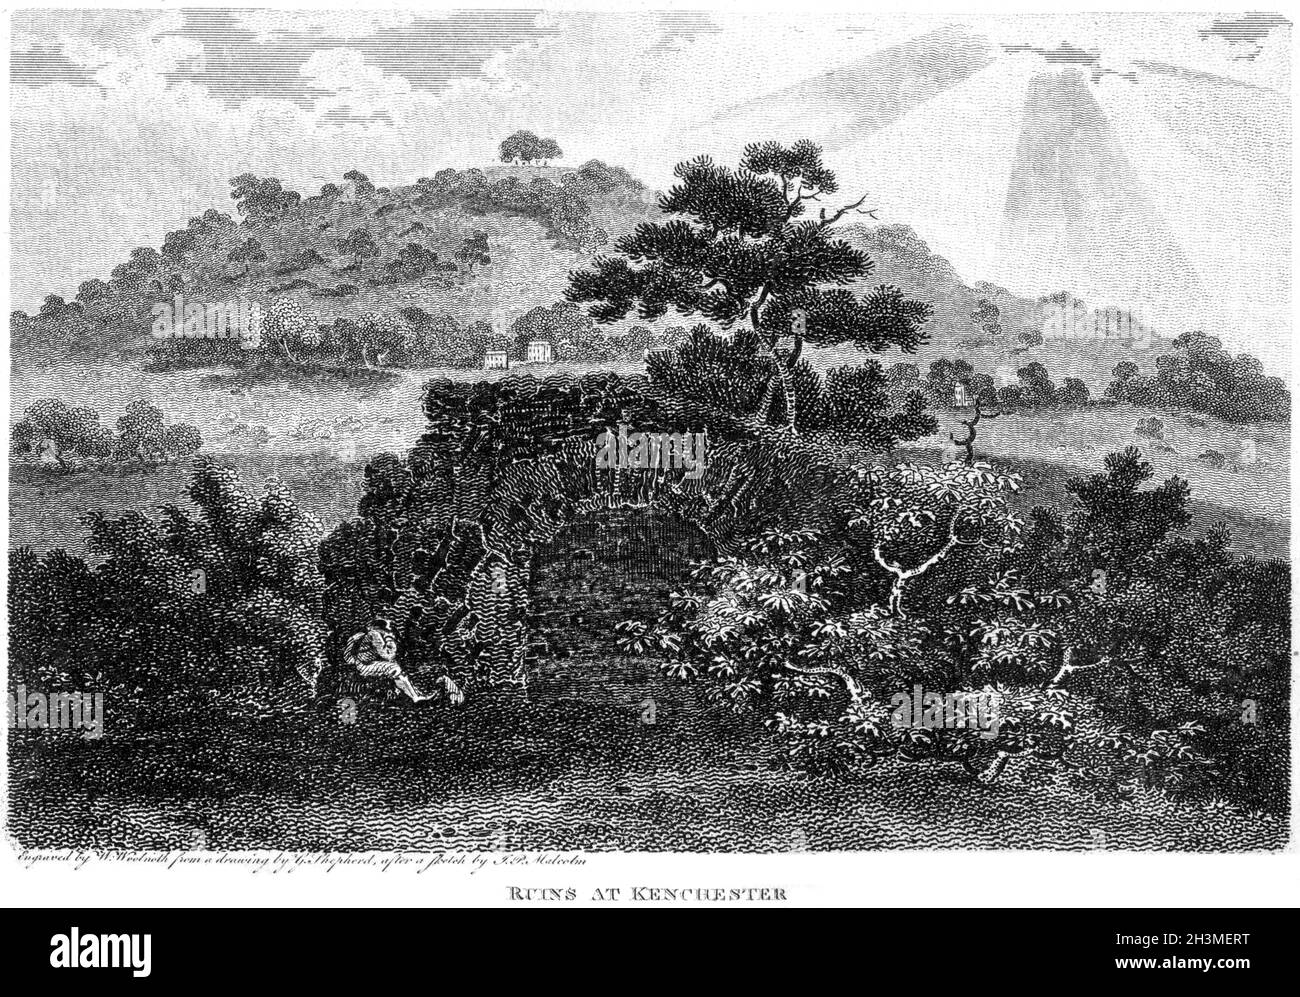 Eine Gravur von Ruinen in Kenchester (Credenhall in der Ferne) Herefordshire UK gescannt mit hoher Auflösung aus einem Buch im Jahr 1812 gedruckt. Stockfoto